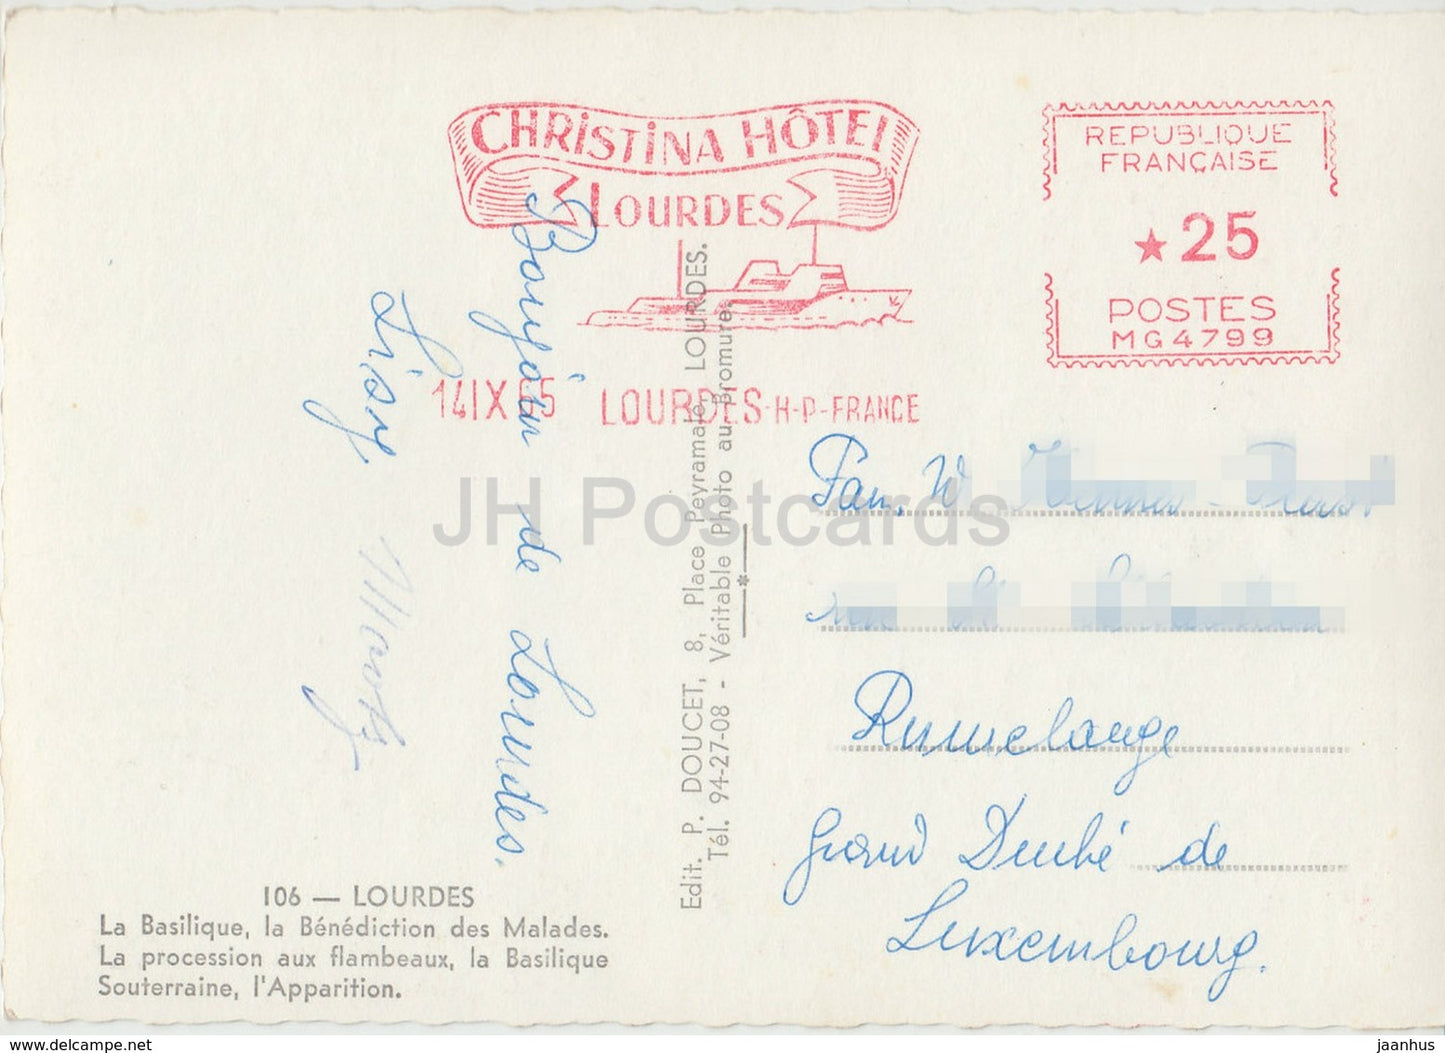 Souvenir de Lourdes - Christina hotel - multiview - 106 - France - 1965 - used